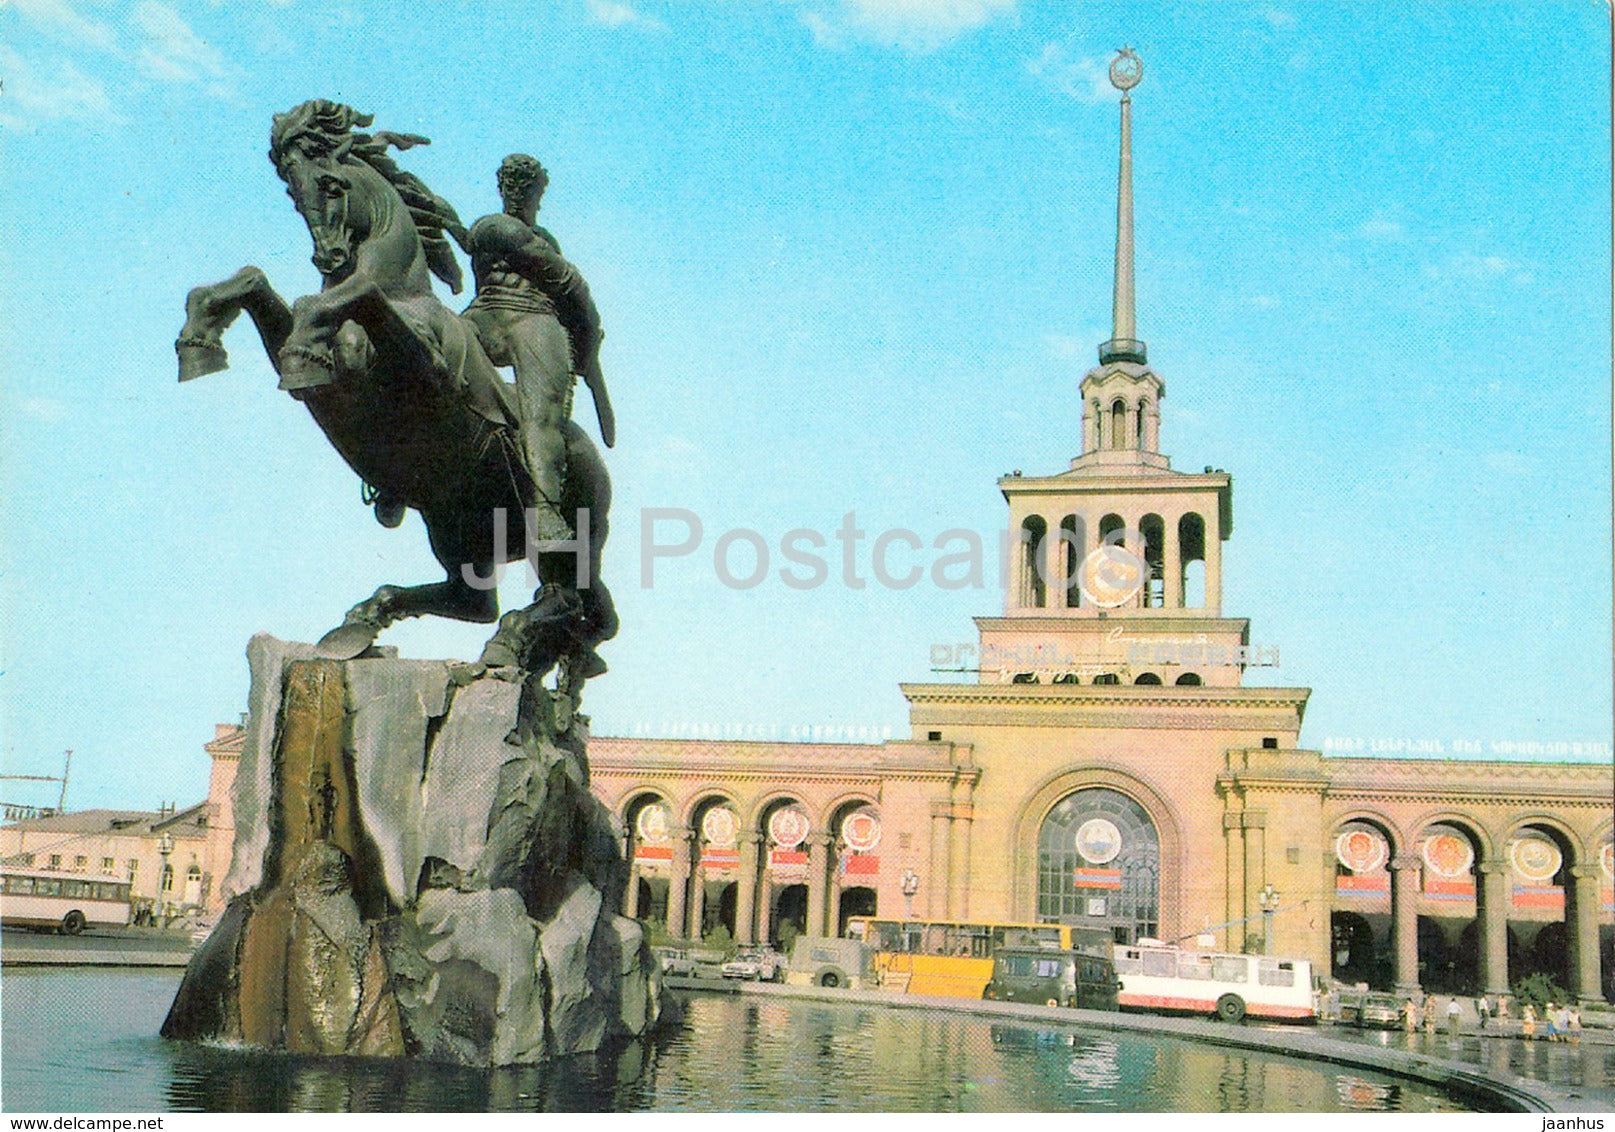 Yerevan - monument to David of Sasun - Ikarus bus - trolleybus - postal stationery - 1985 - Armenia USSR -  unused - JH Postcards